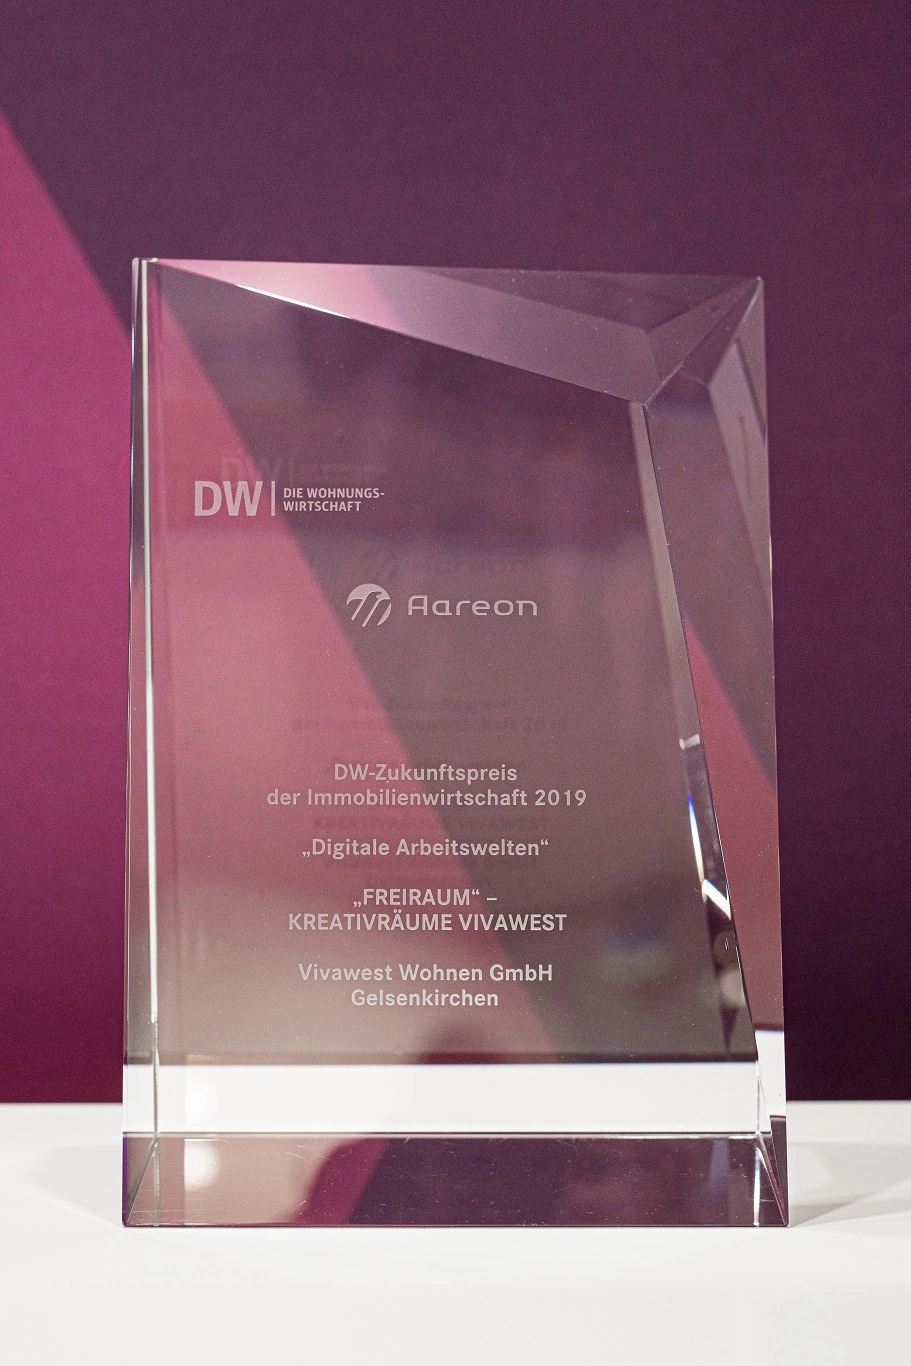 DW-Zukunftspreis der Immobilienwirtschaft - Vivawest